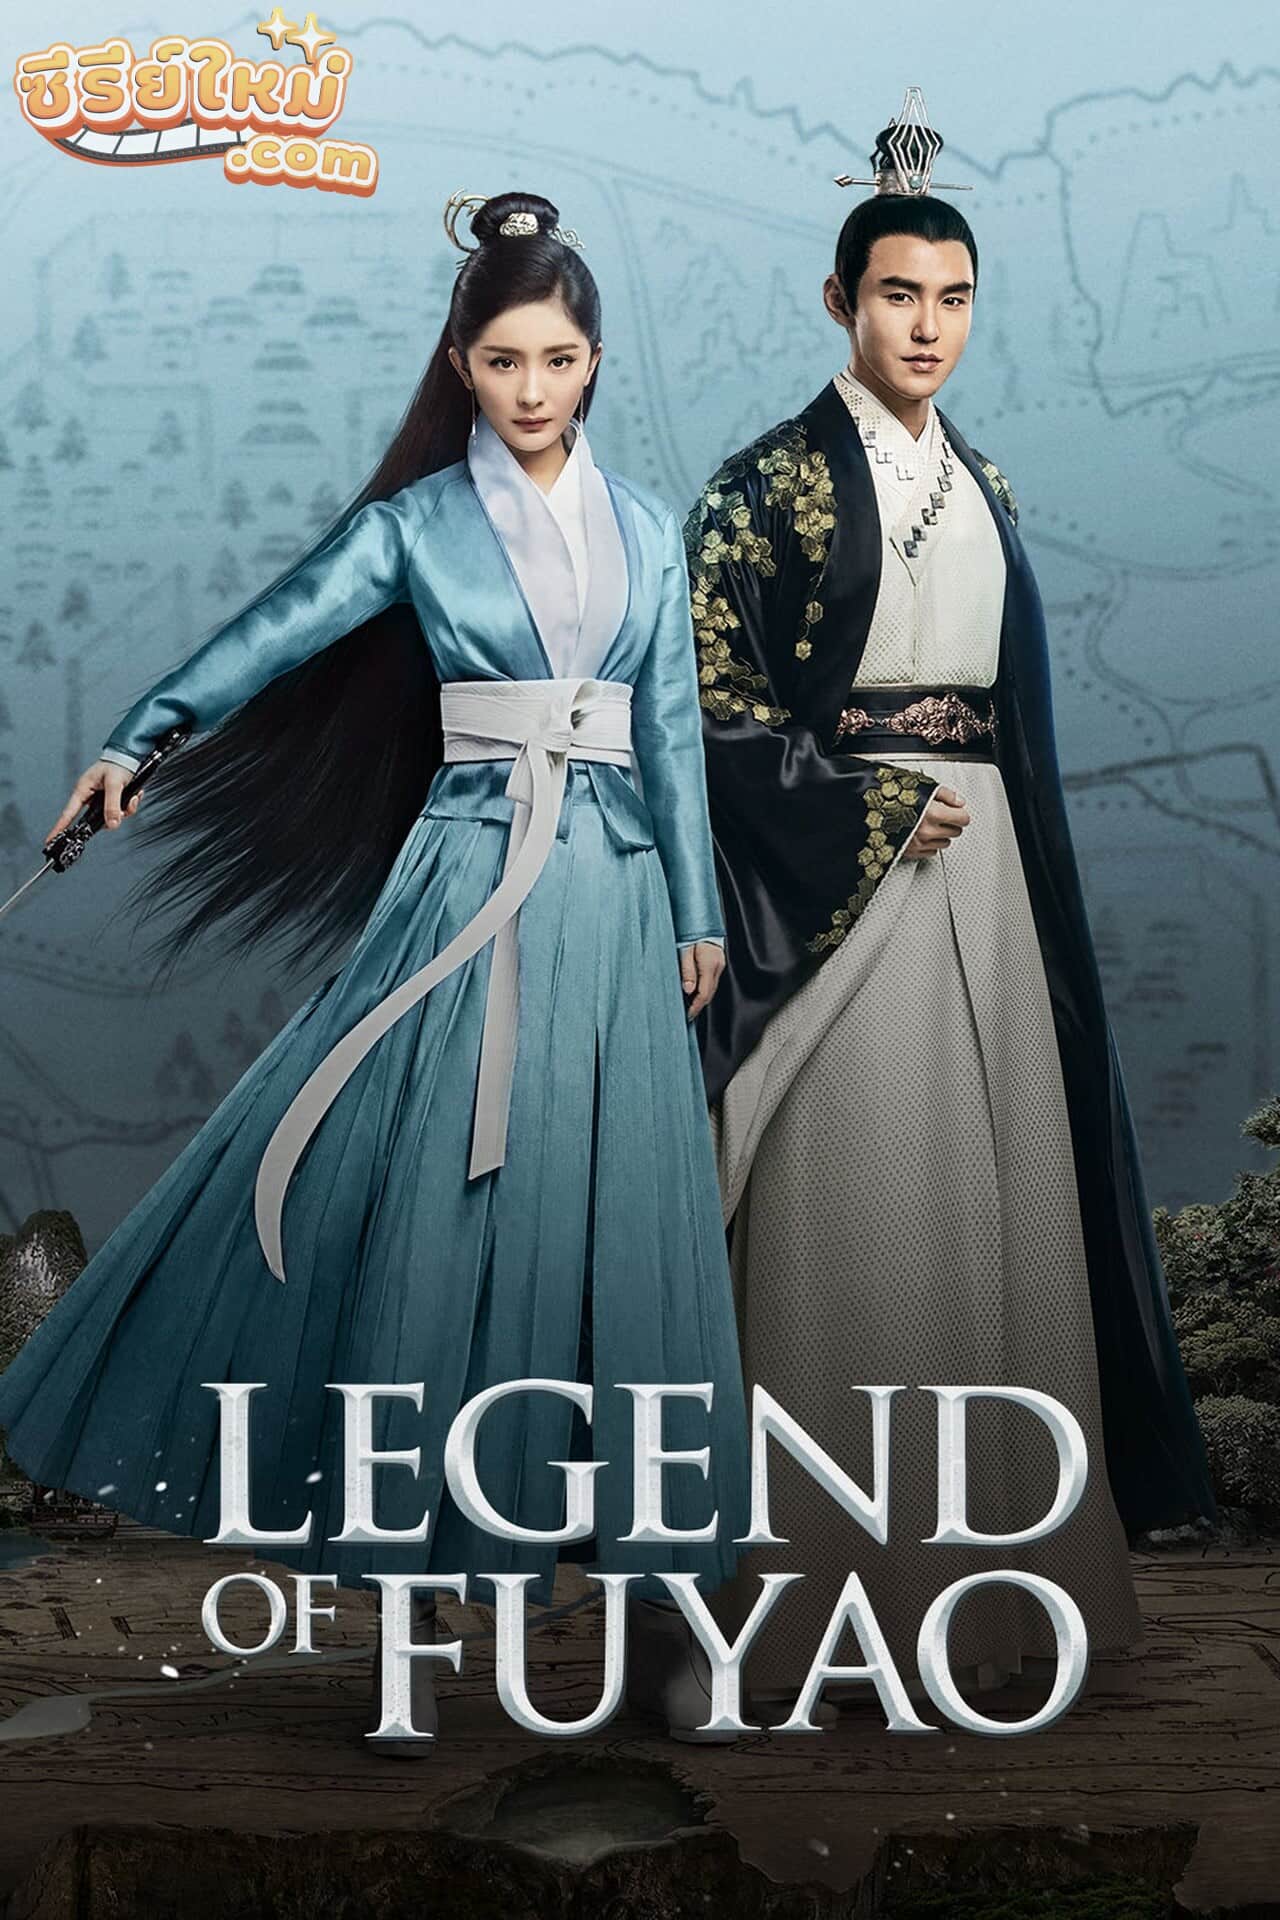 Legend of Fuyao ฝูเหยา จอมนางเหนือบัลลังก์ (2018)